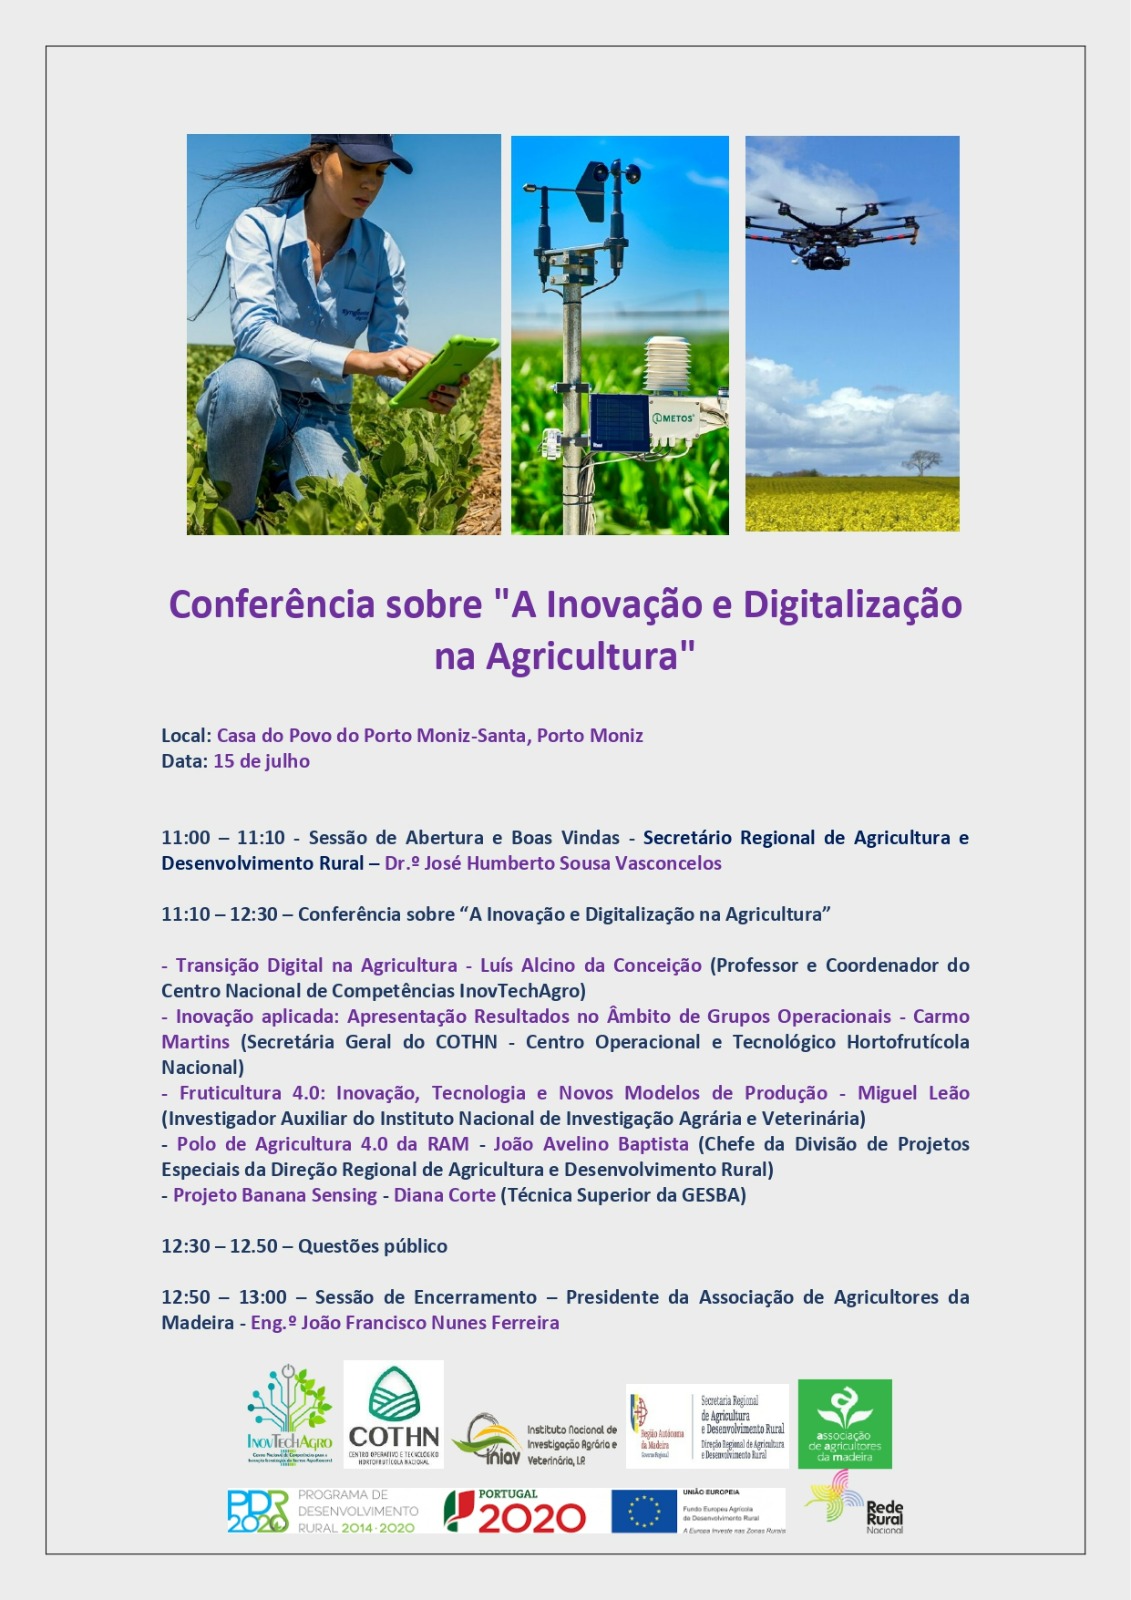 inovacao e digitalizacao na agricultura